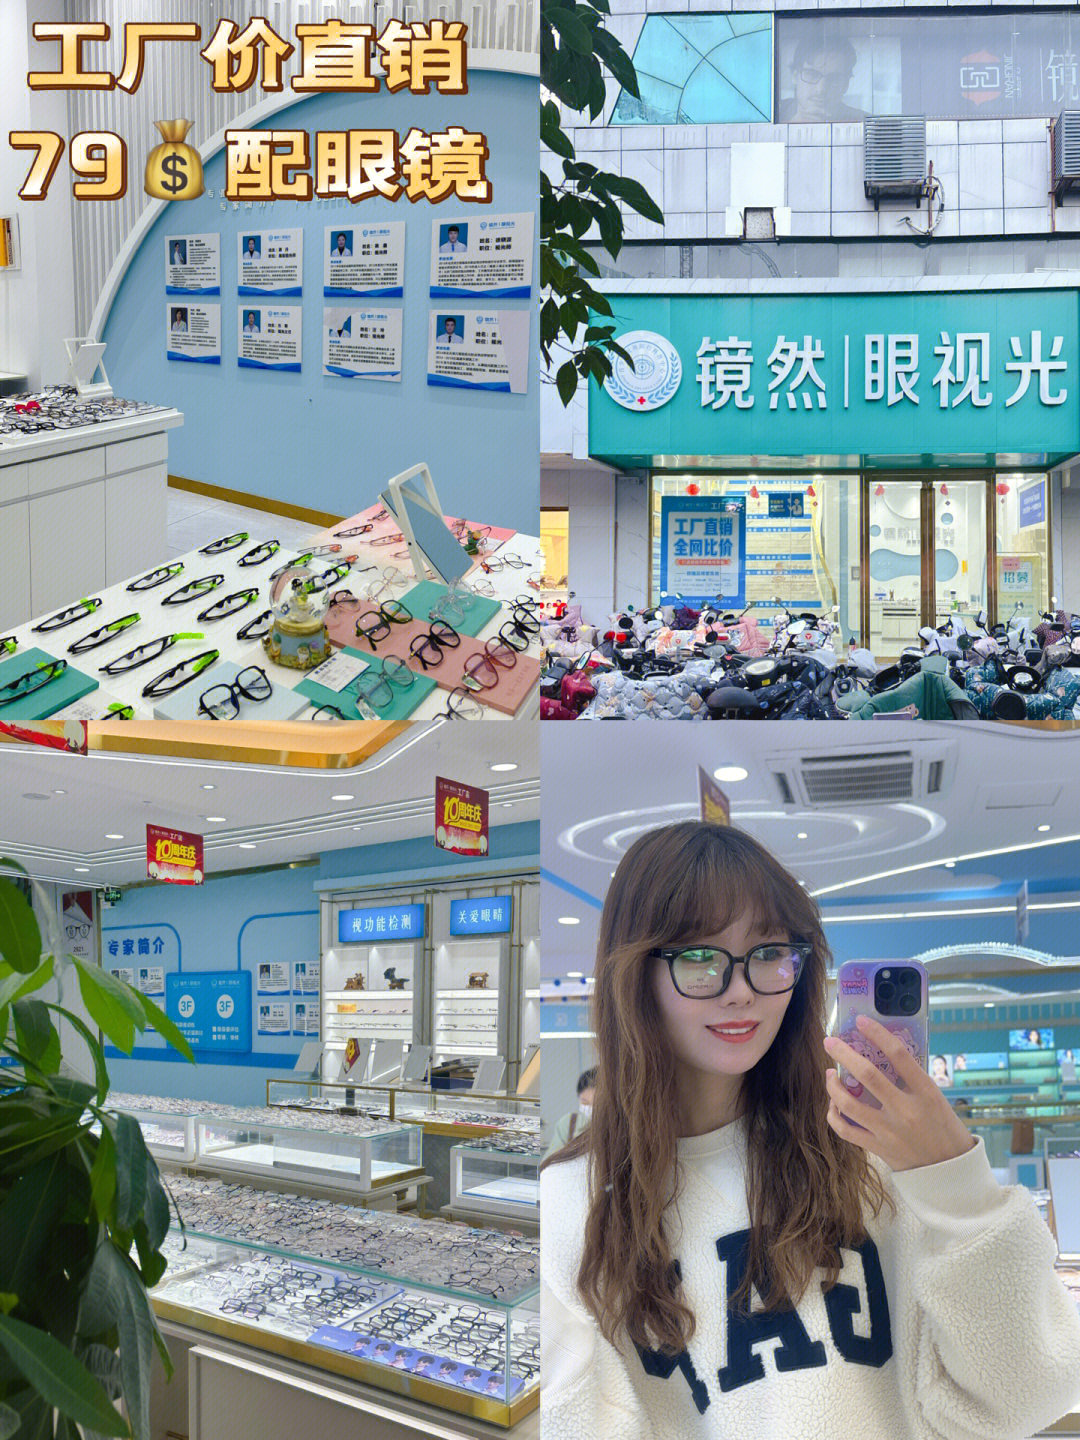 在徐州只要79就可以配一副眼镜啦60